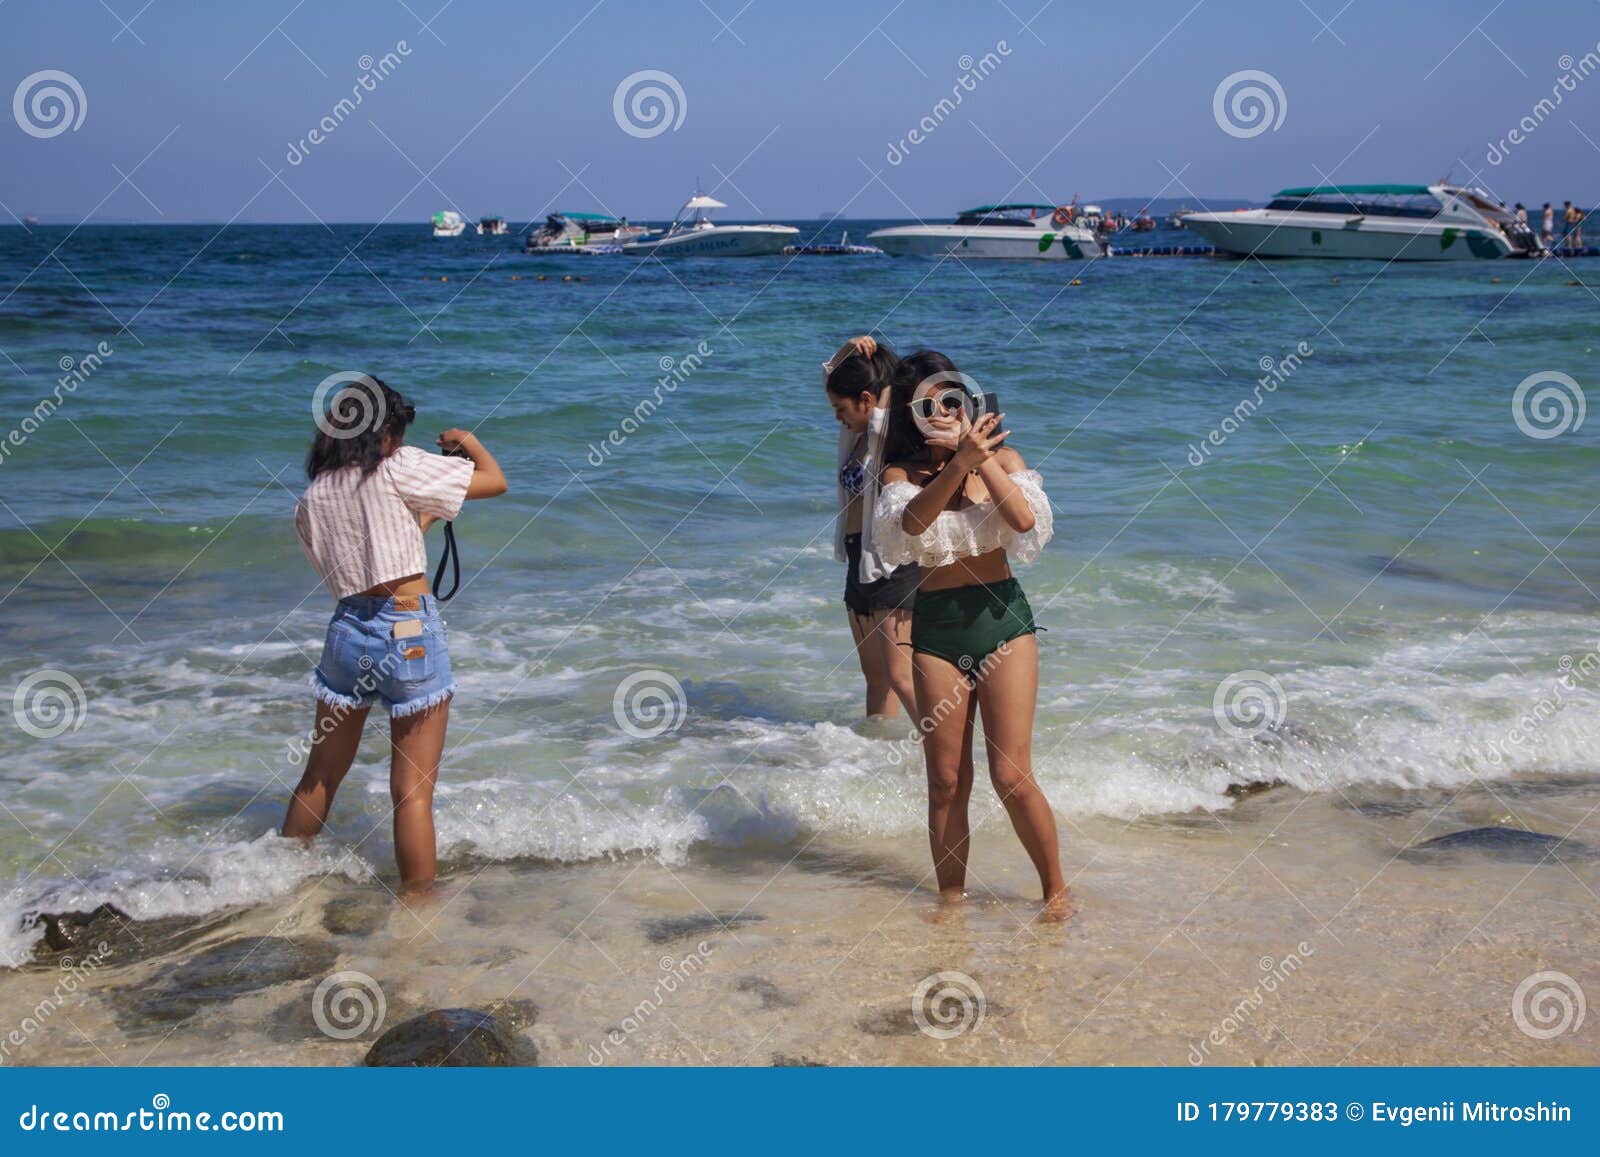 Beach girls phuket Top 25